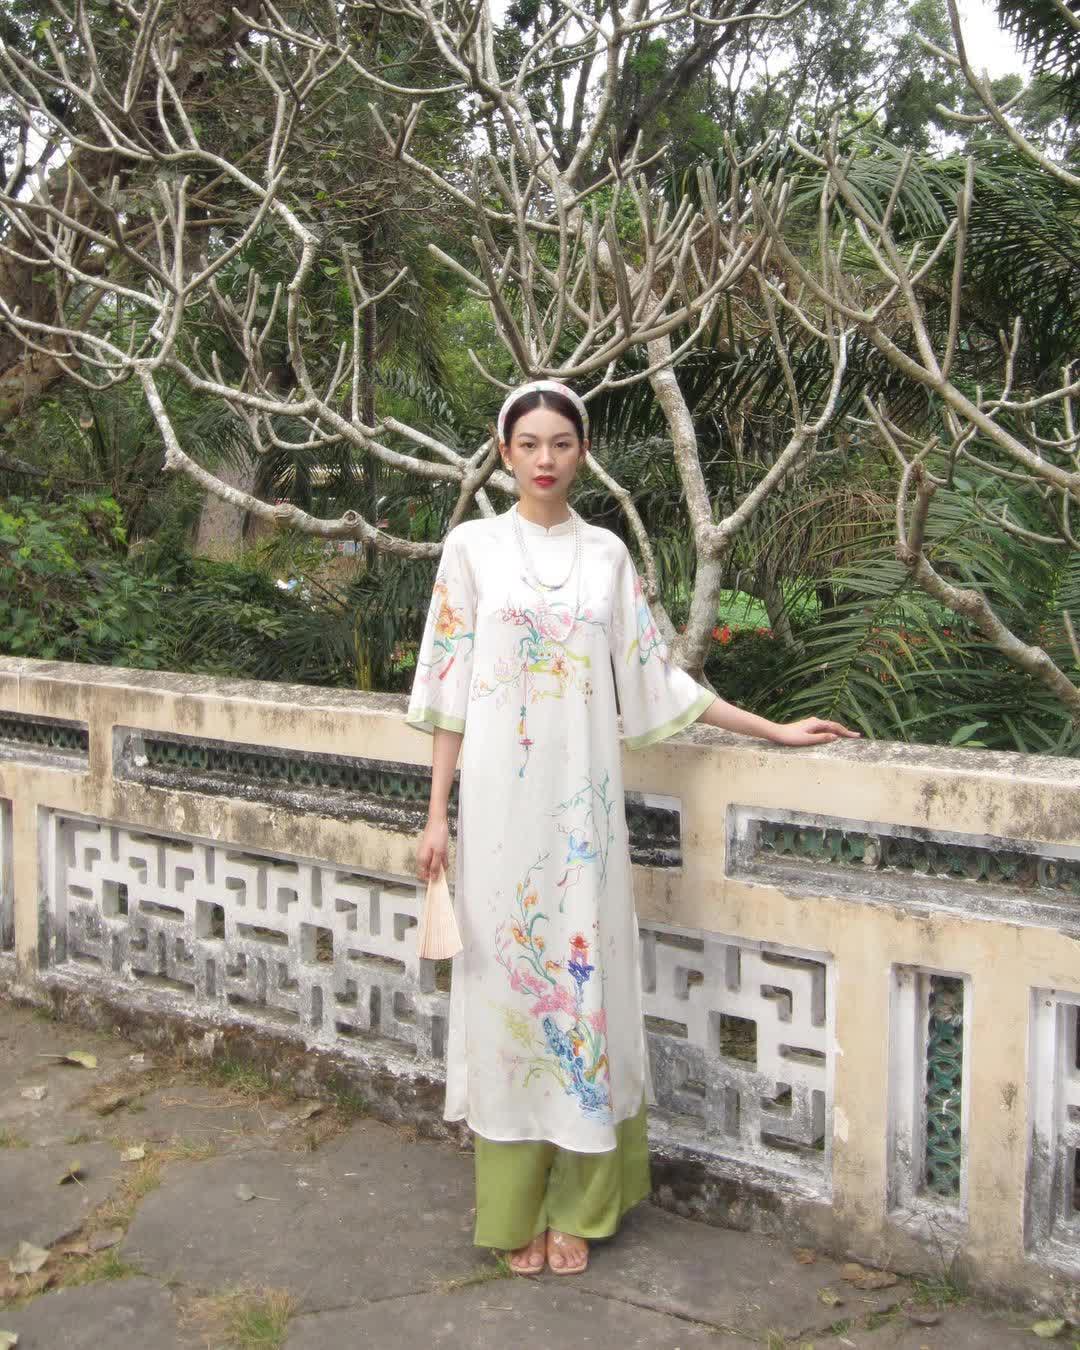 Ngắm áo dài mùng 3 Tết của mỹ nhân Việt: nhiều thiết kế đơn giản nhưng cực kỳ tinh tế, giá lại hợp lý với túi tiền - Ảnh 3.